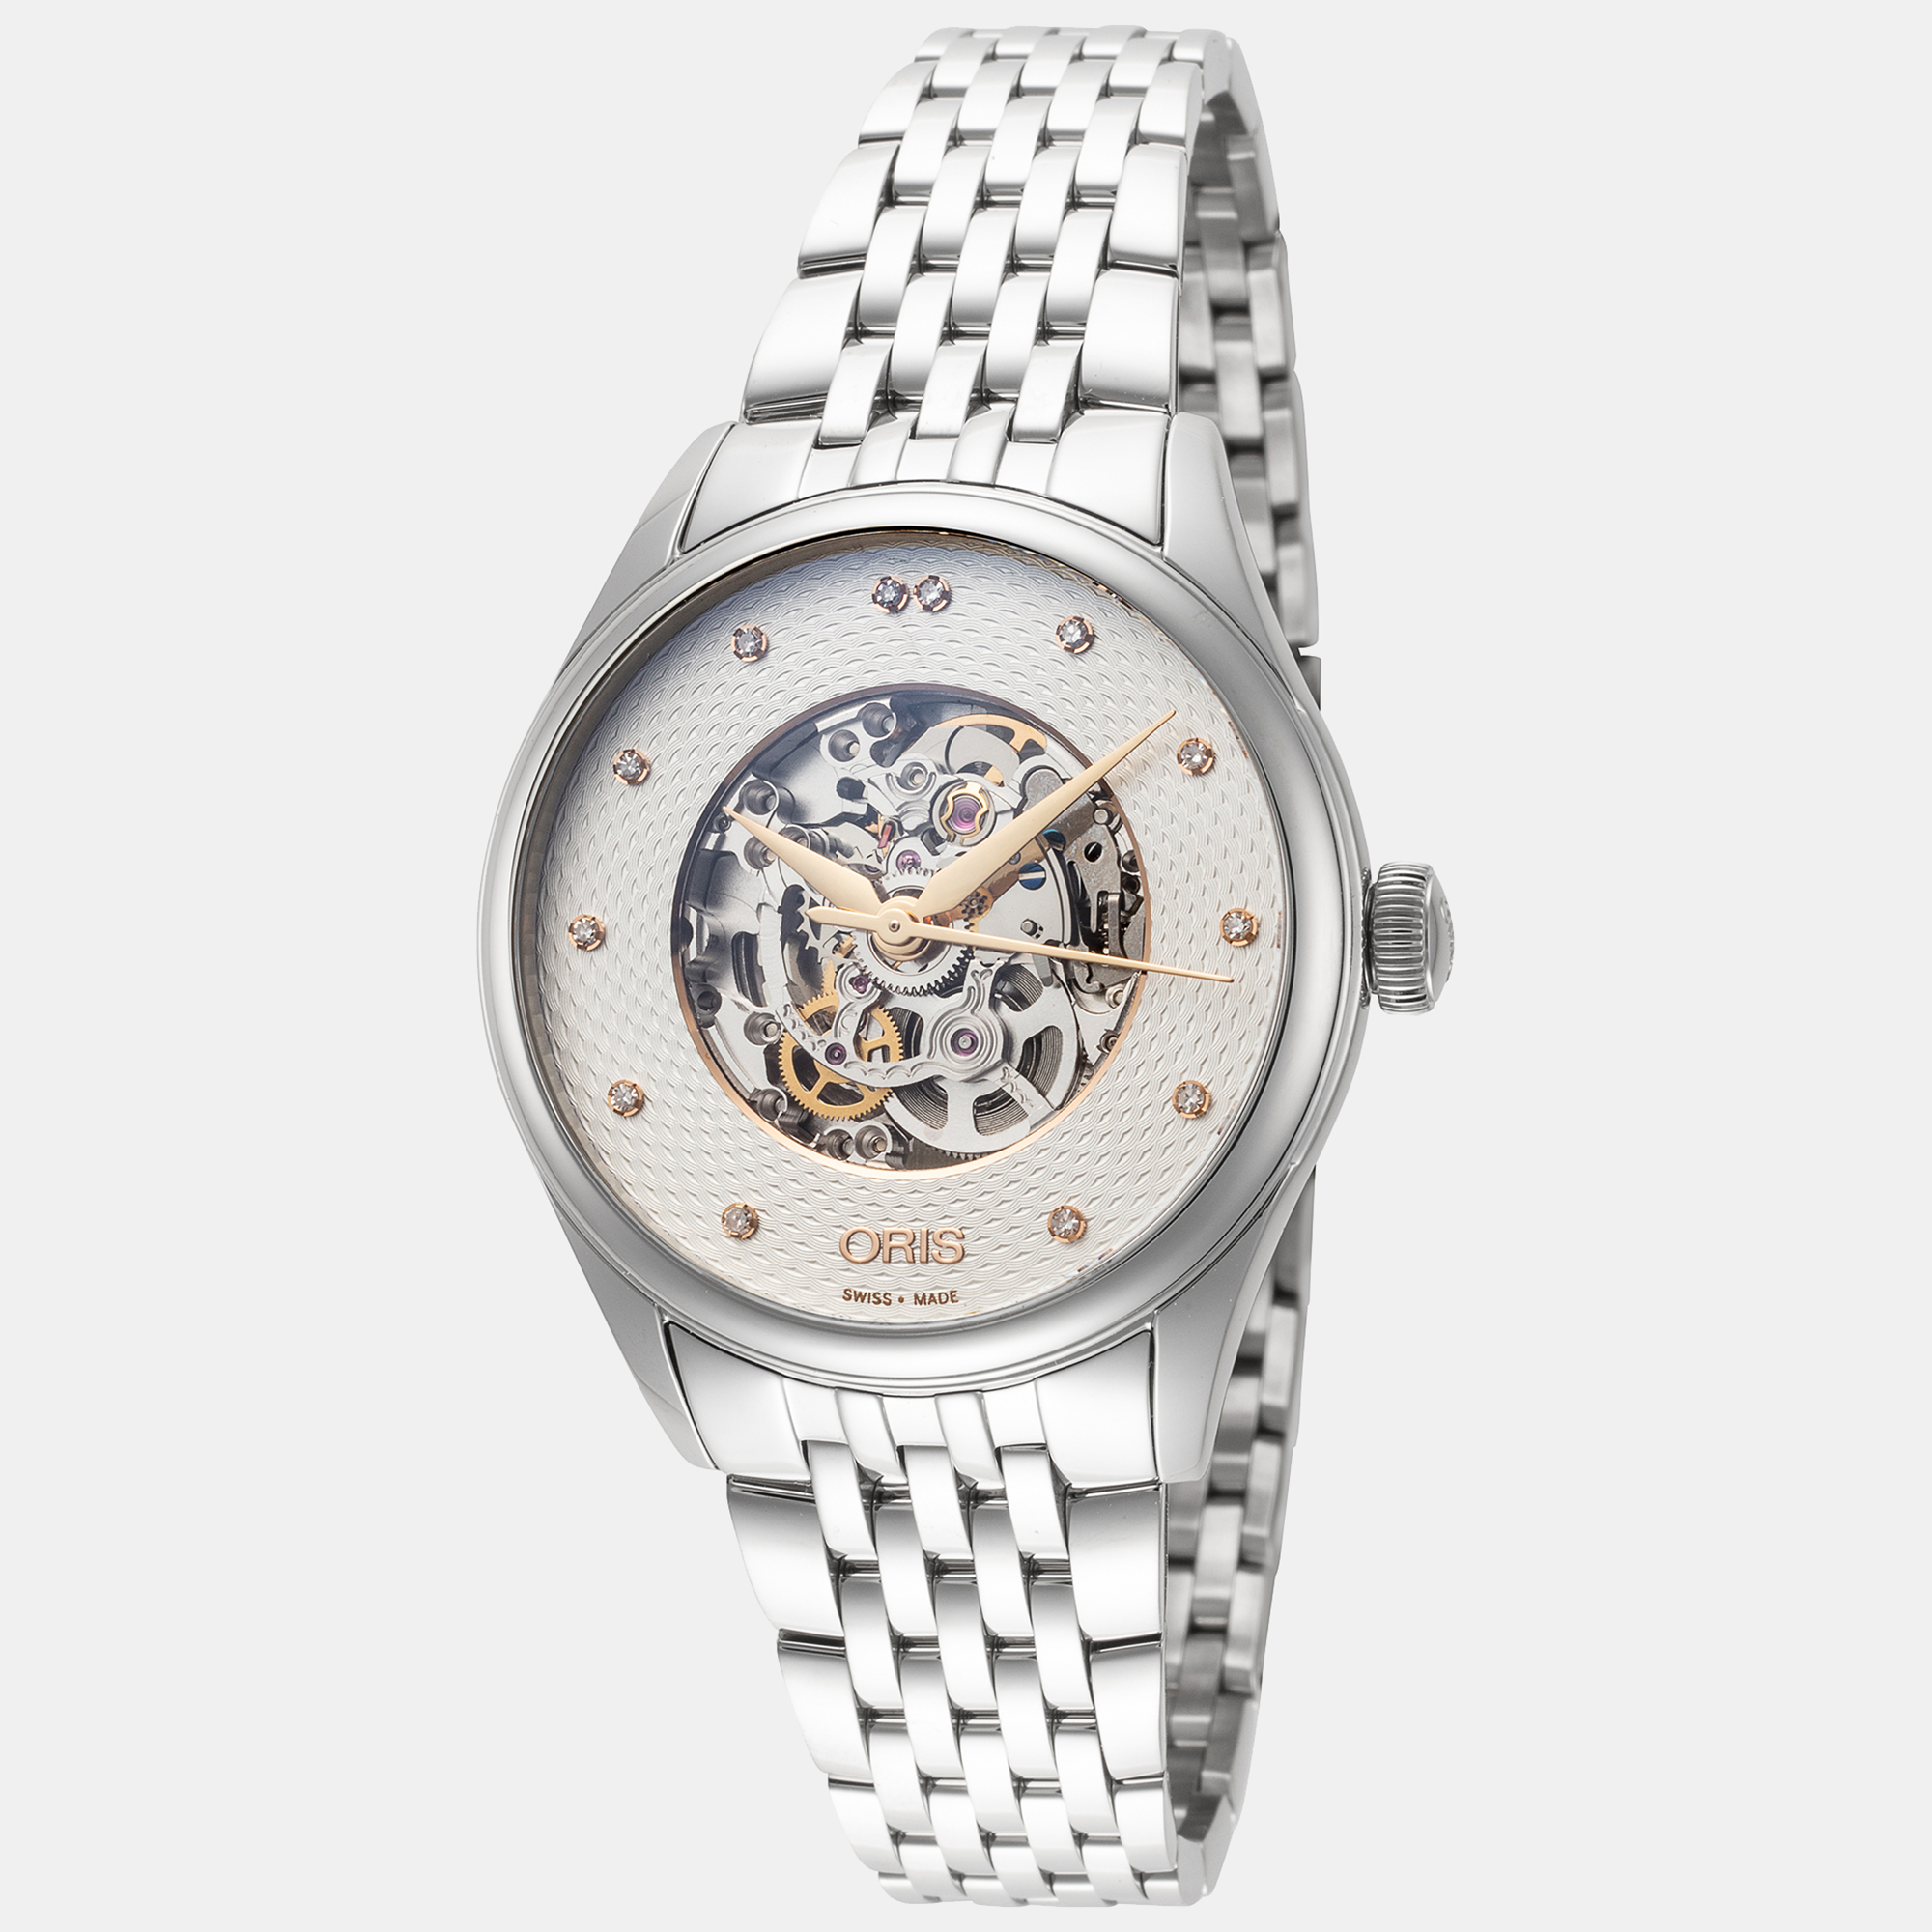 Oris women's 01-560-7724-4031-07-8-17-79 artelier skeleton 33mm automatic watch